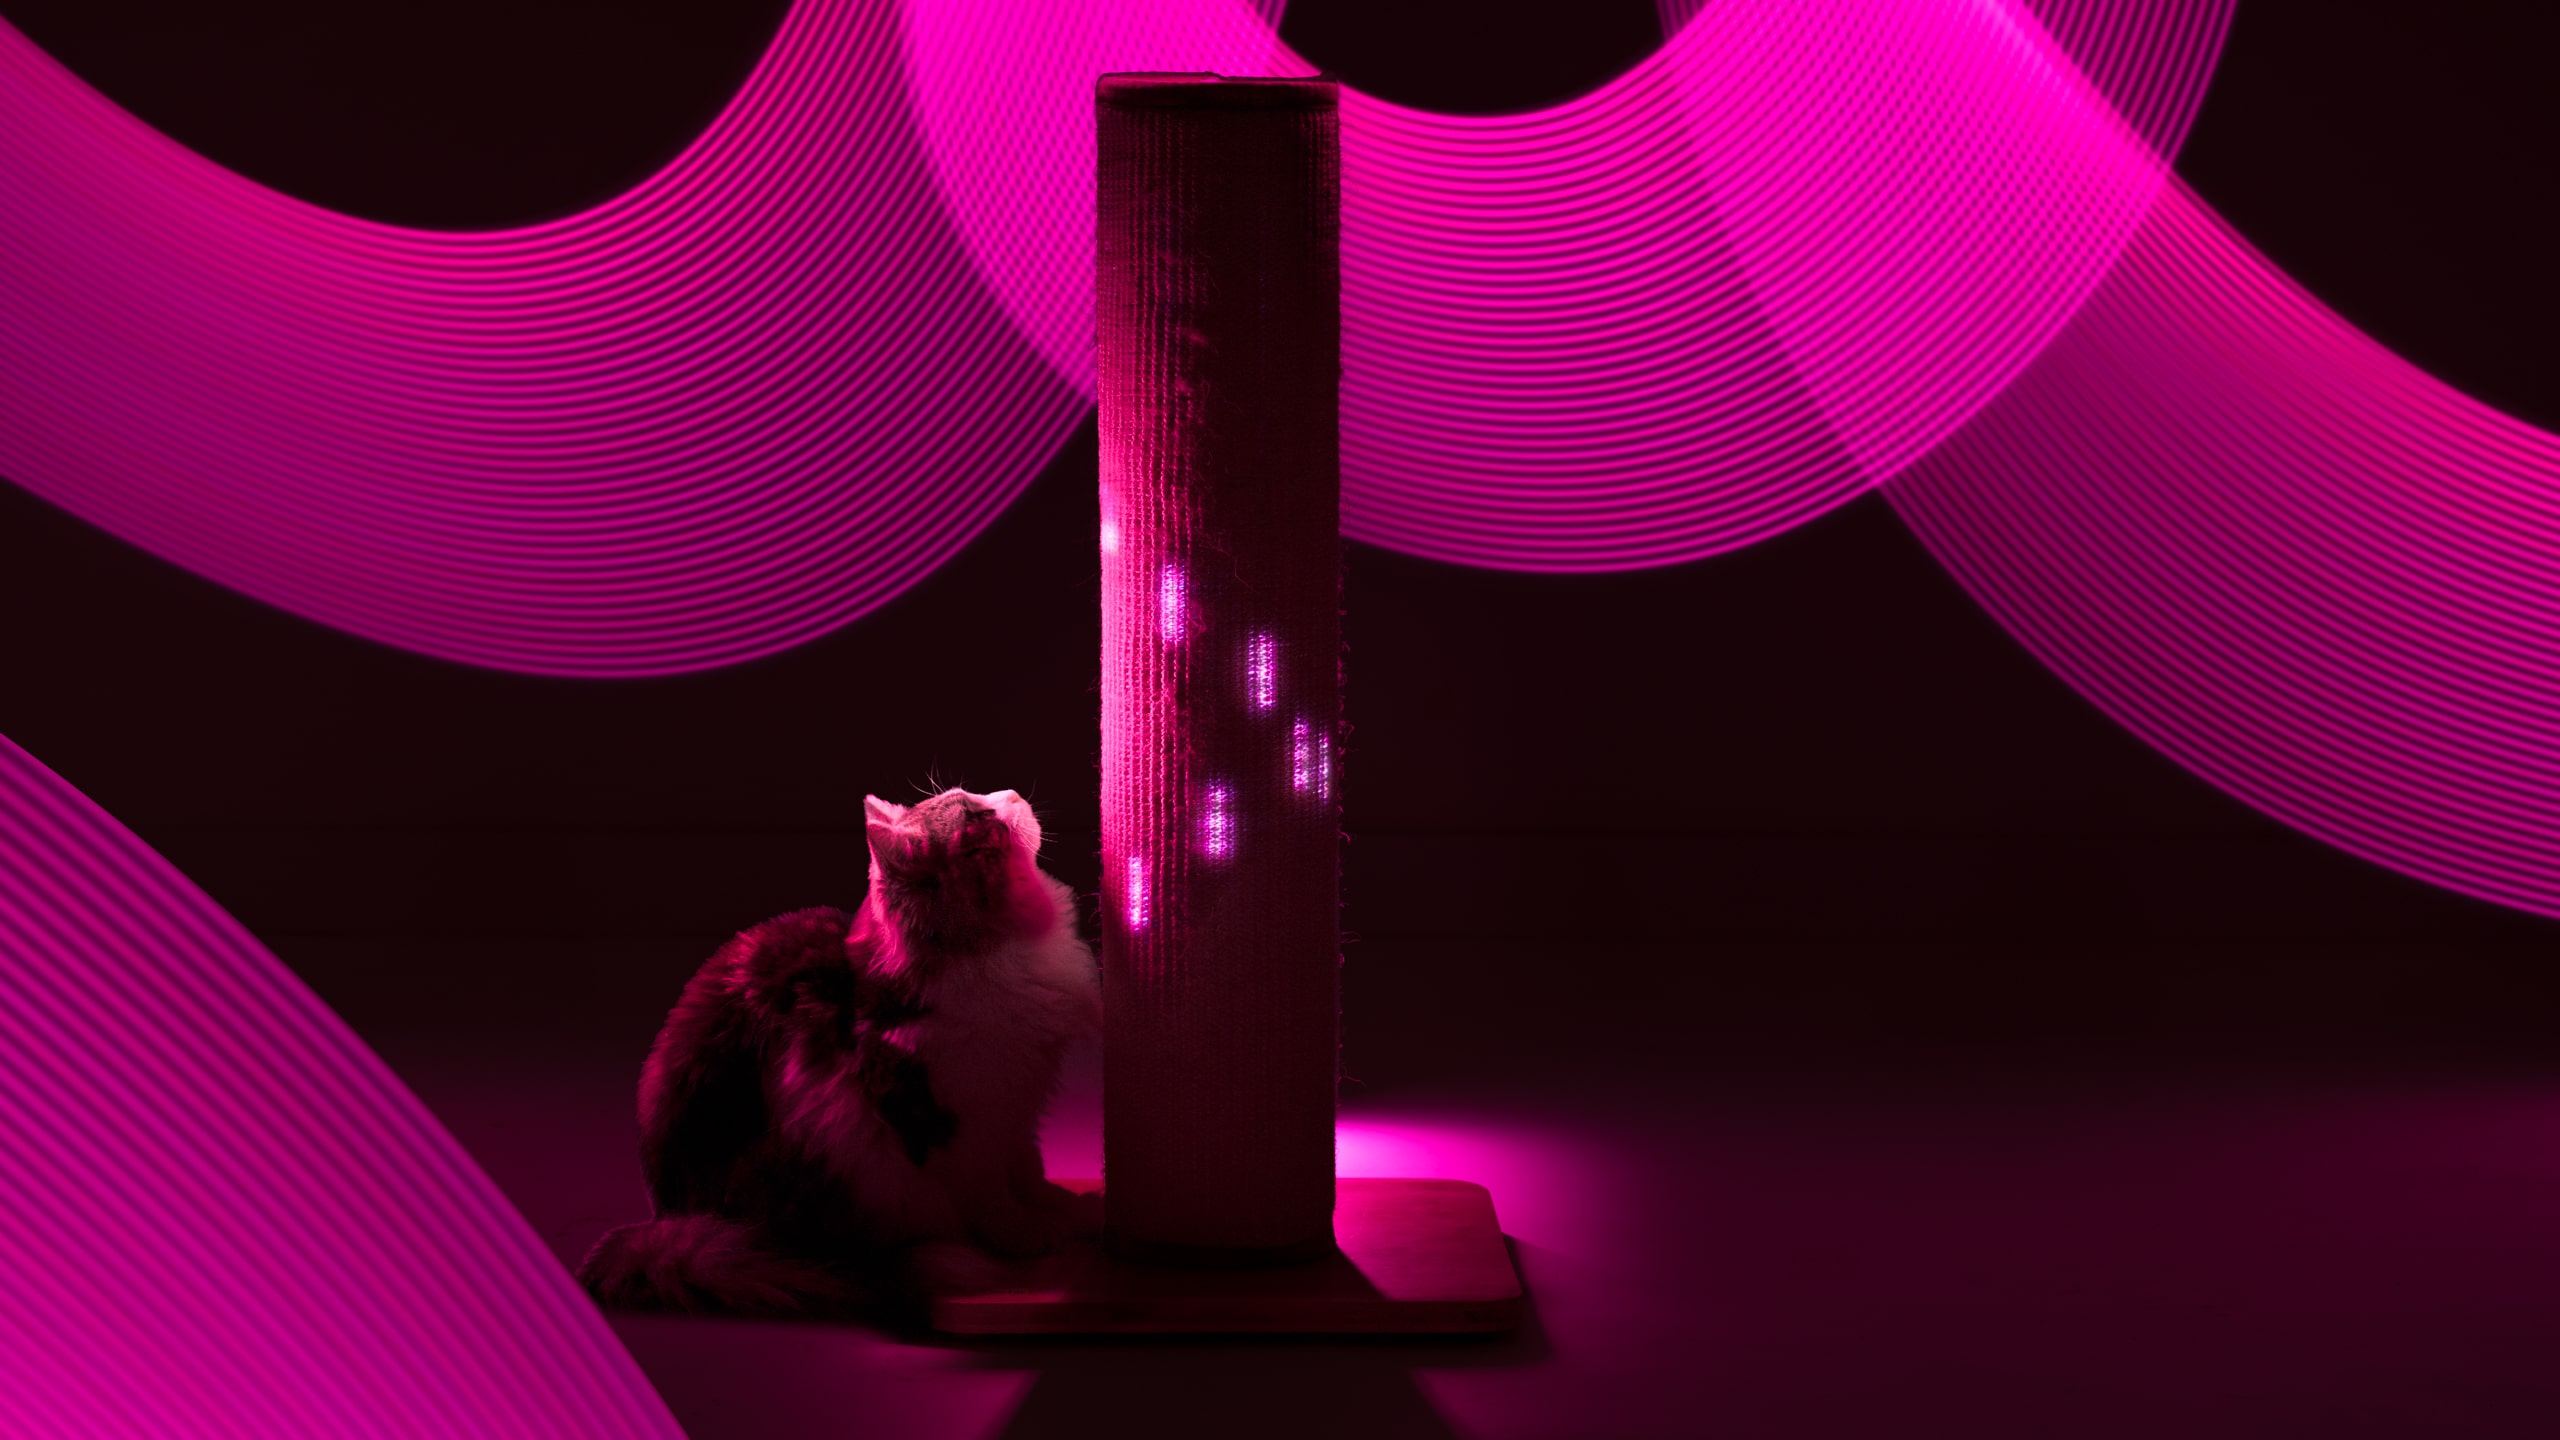 Kat omringd door het licht van de Switch krabpaal 